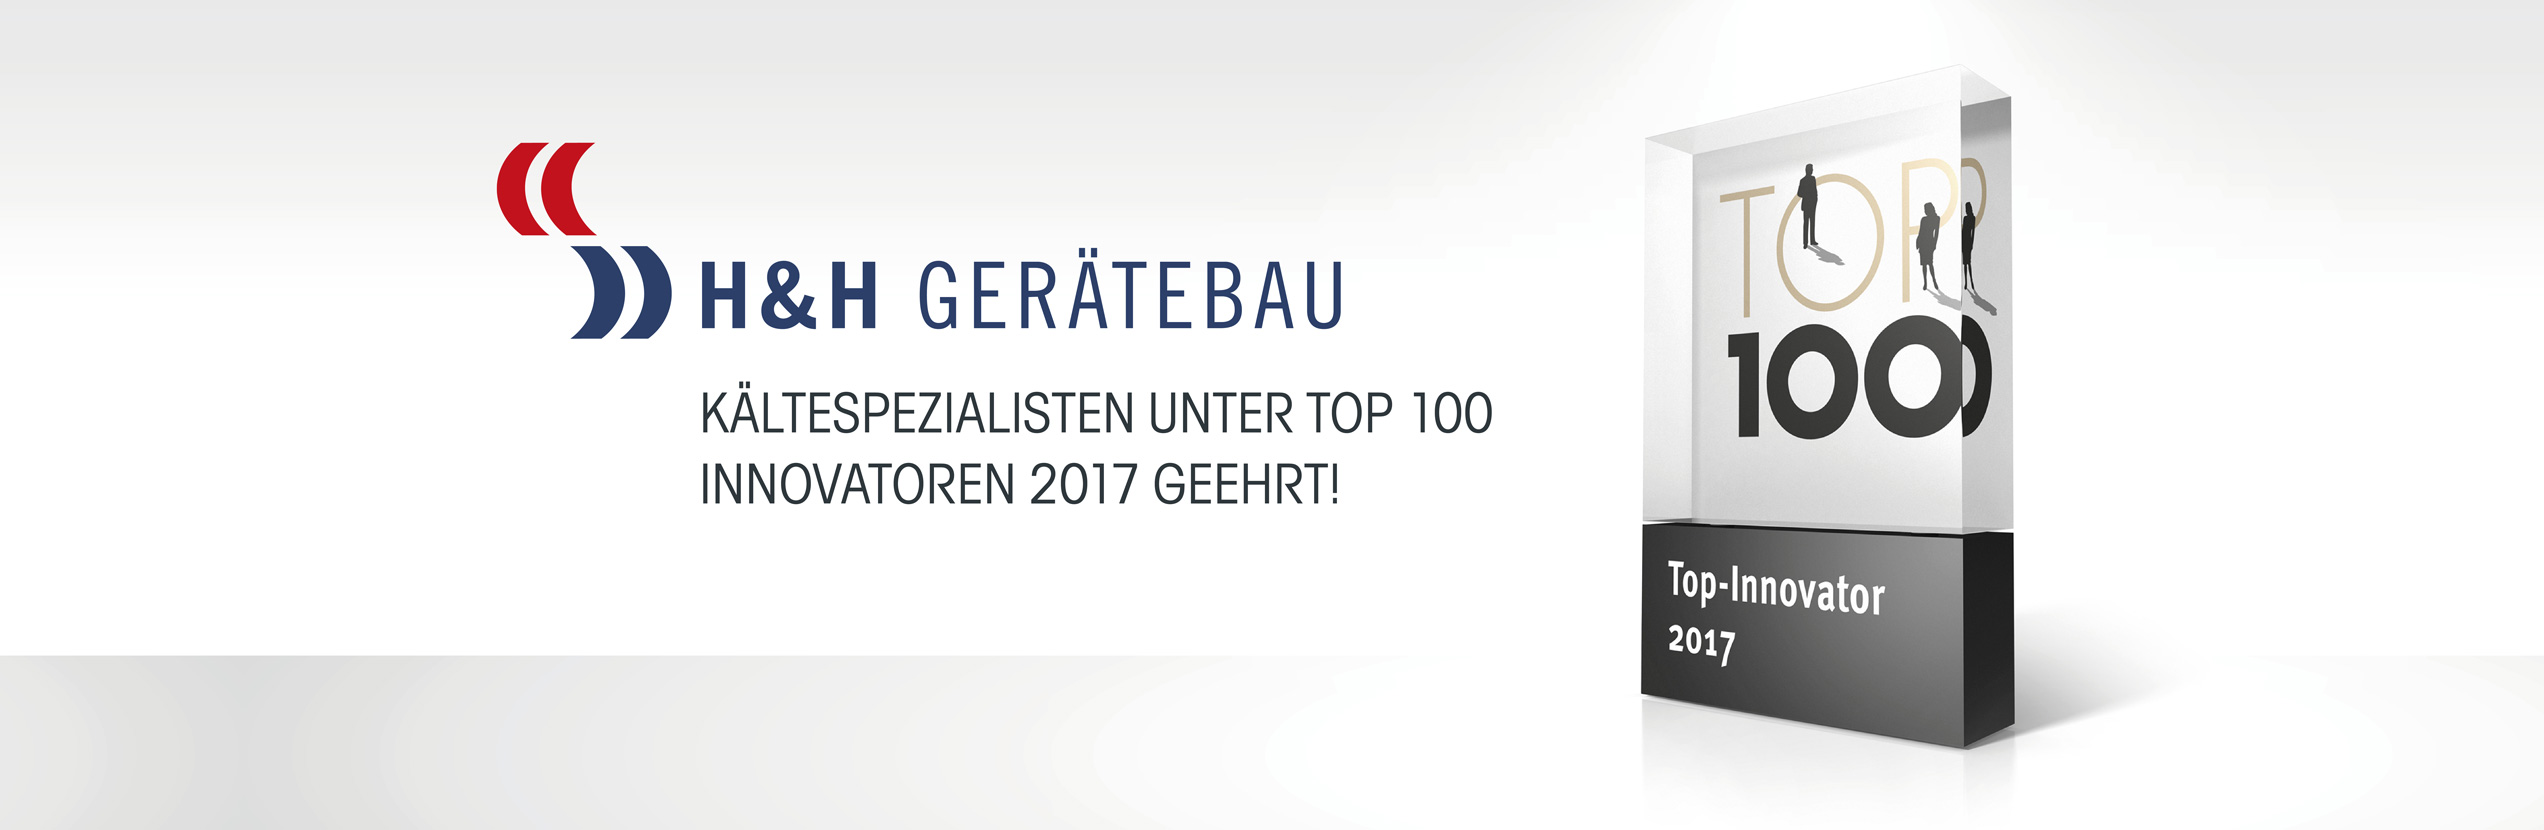 H&H Geraetebau TOP 100 